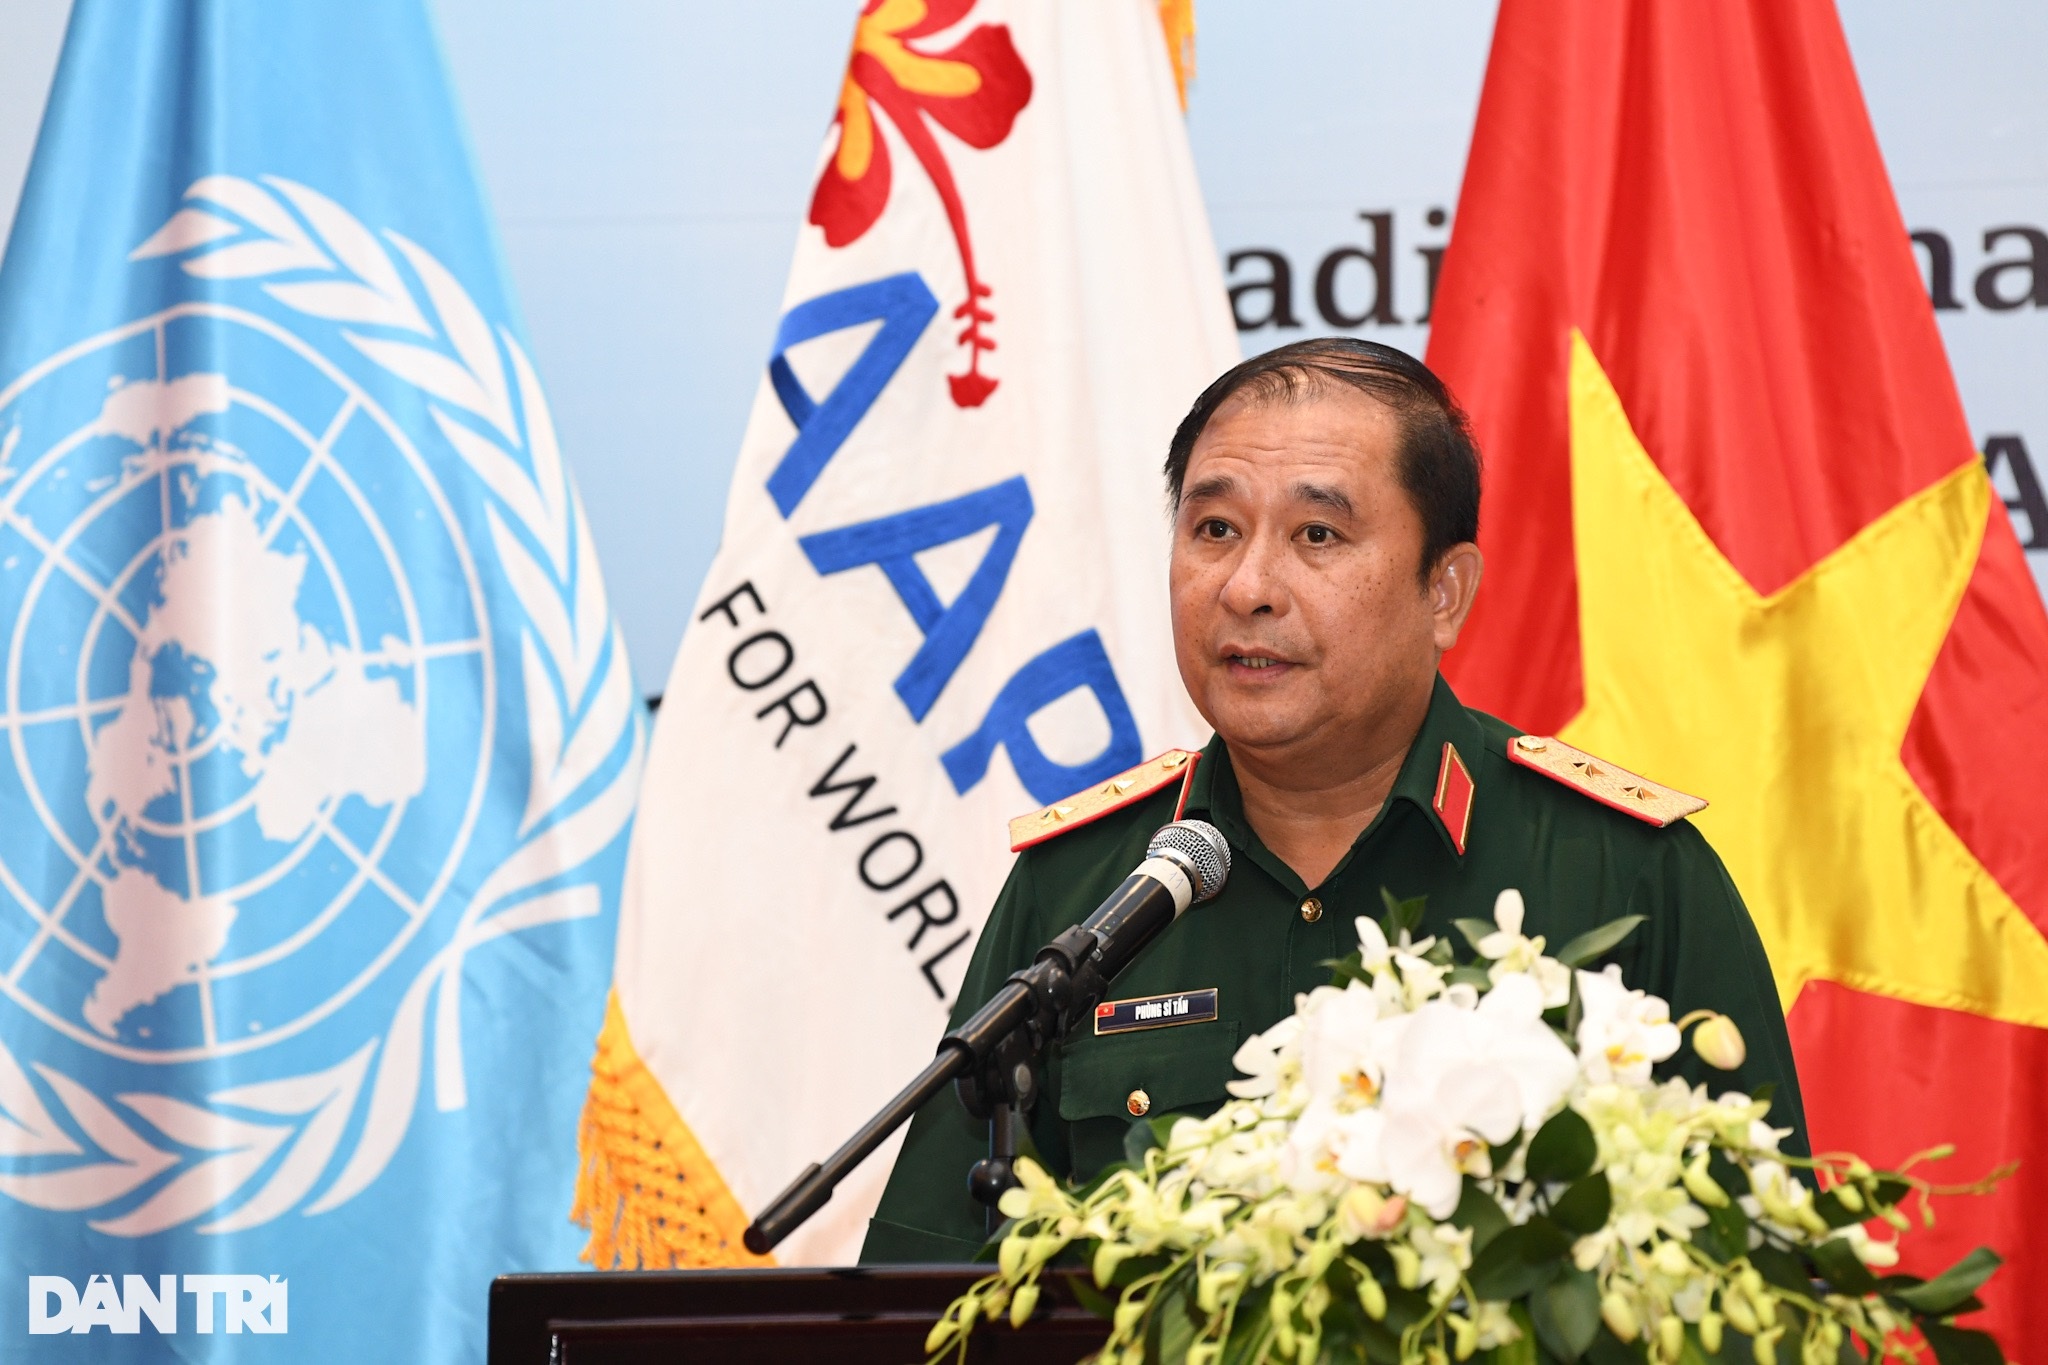 Lực lượng Gìn giữ hòa bình Việt Nam được Liên hợp quốc đánh giá cao - 2